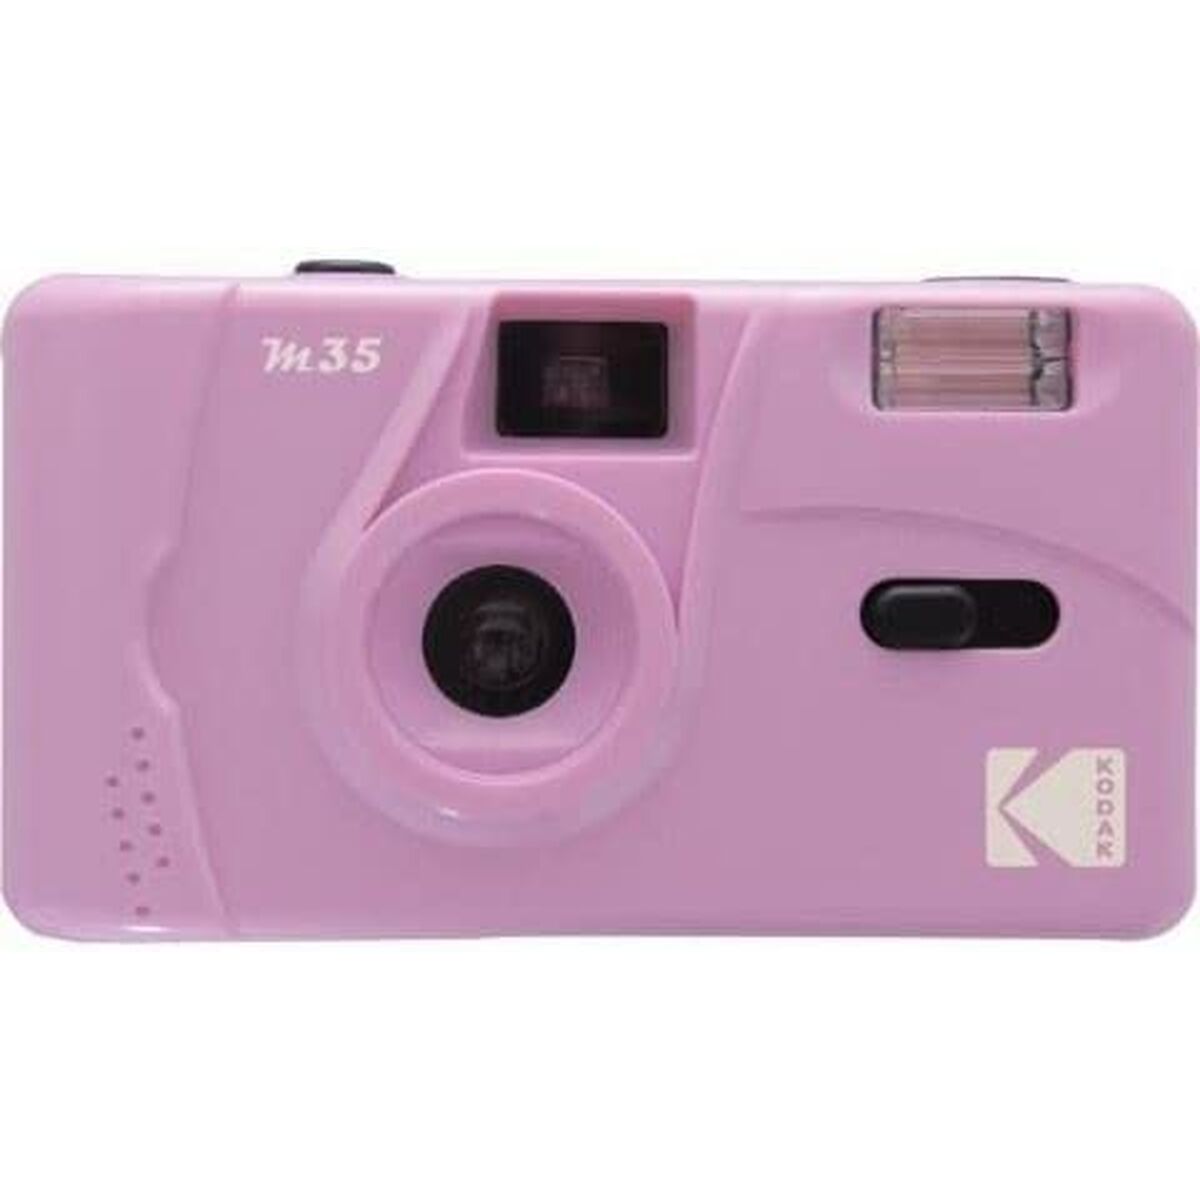 Fotokamera Kodak M35 Rosa